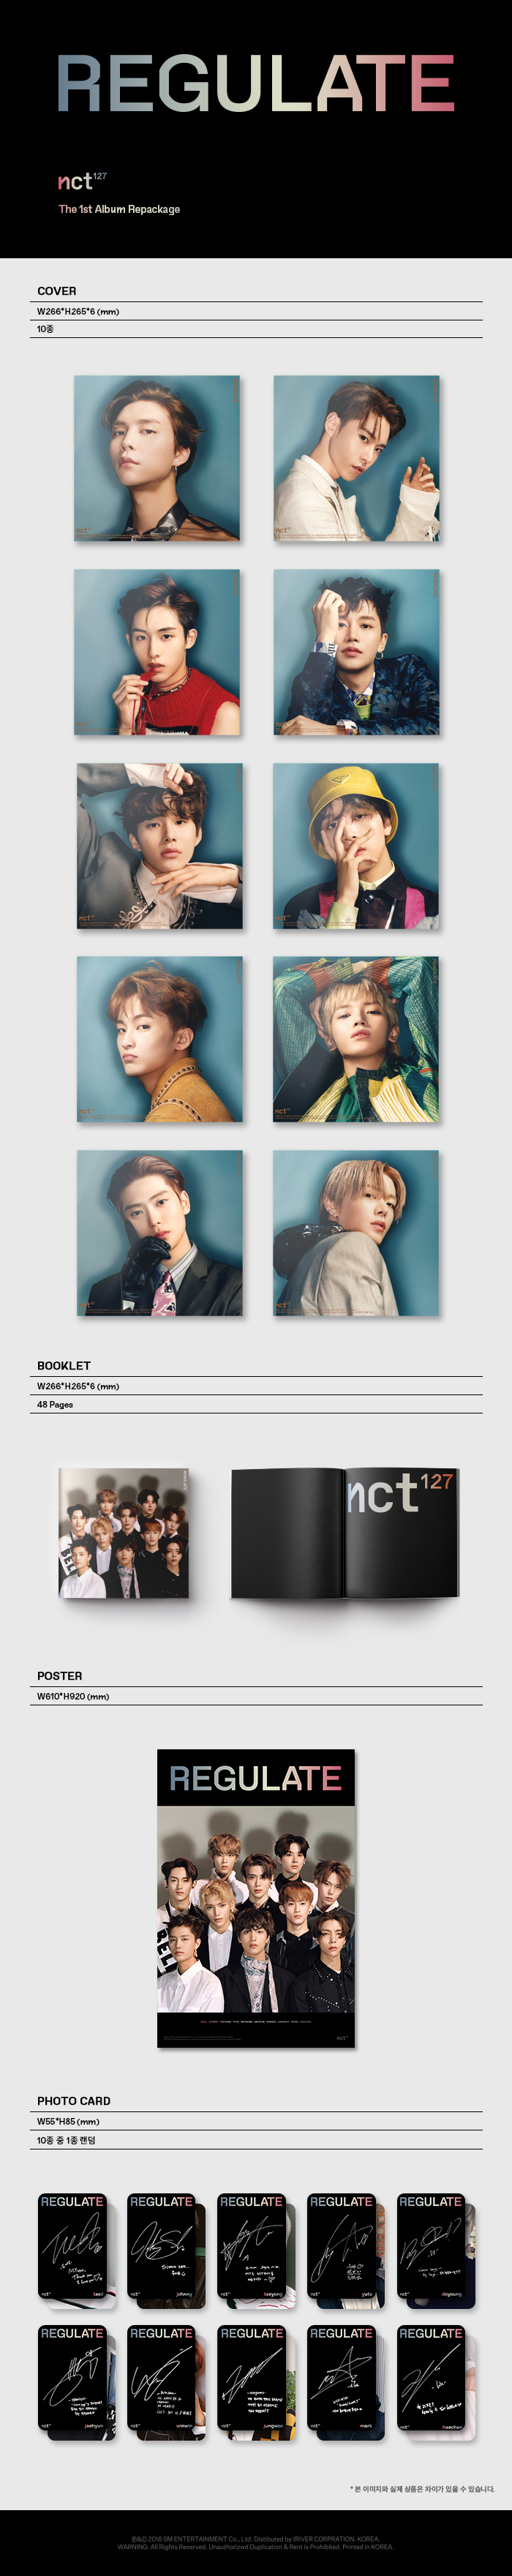 8 NCT 127 1st Album Regular-Irregular Jungwoo Type-A Photo Card Official K-POP 